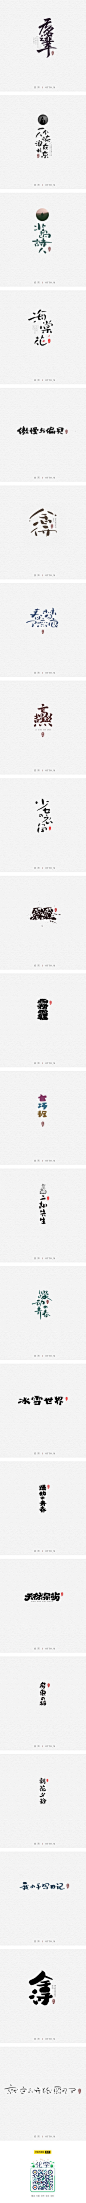 手写字形-字体传奇网-中国首个字体品牌设计师交流网